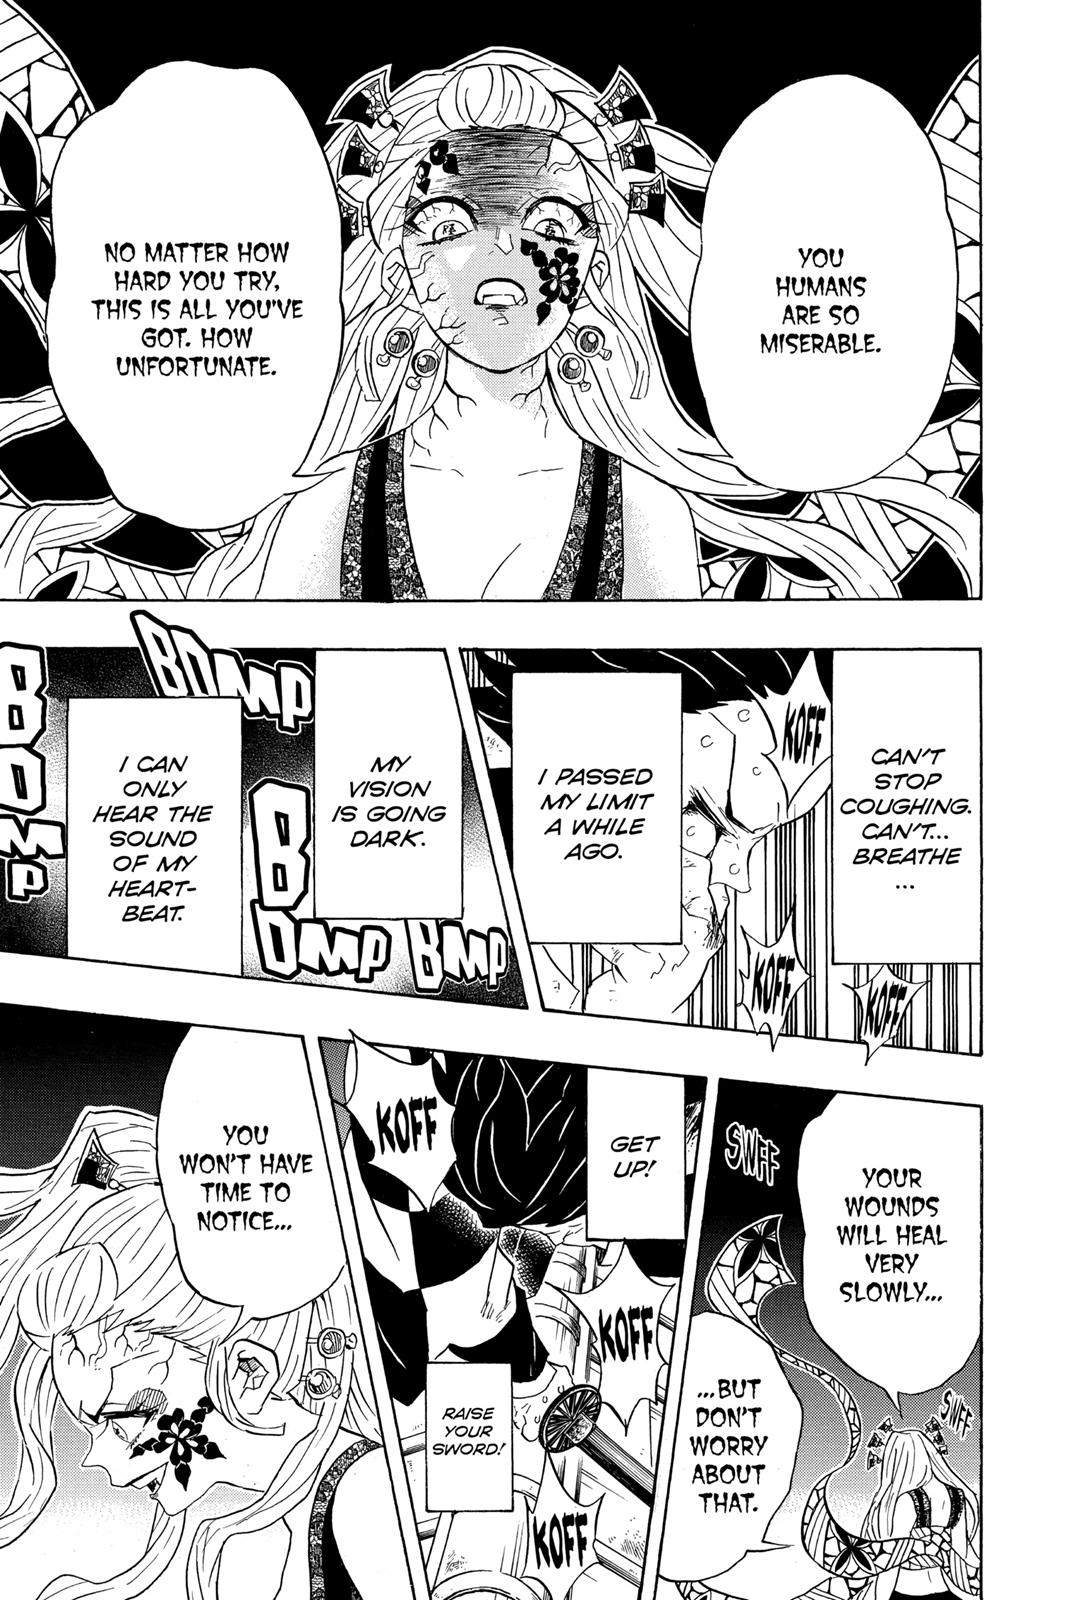 Demon Slayer Manga Manga Chapter - 82 - image 13